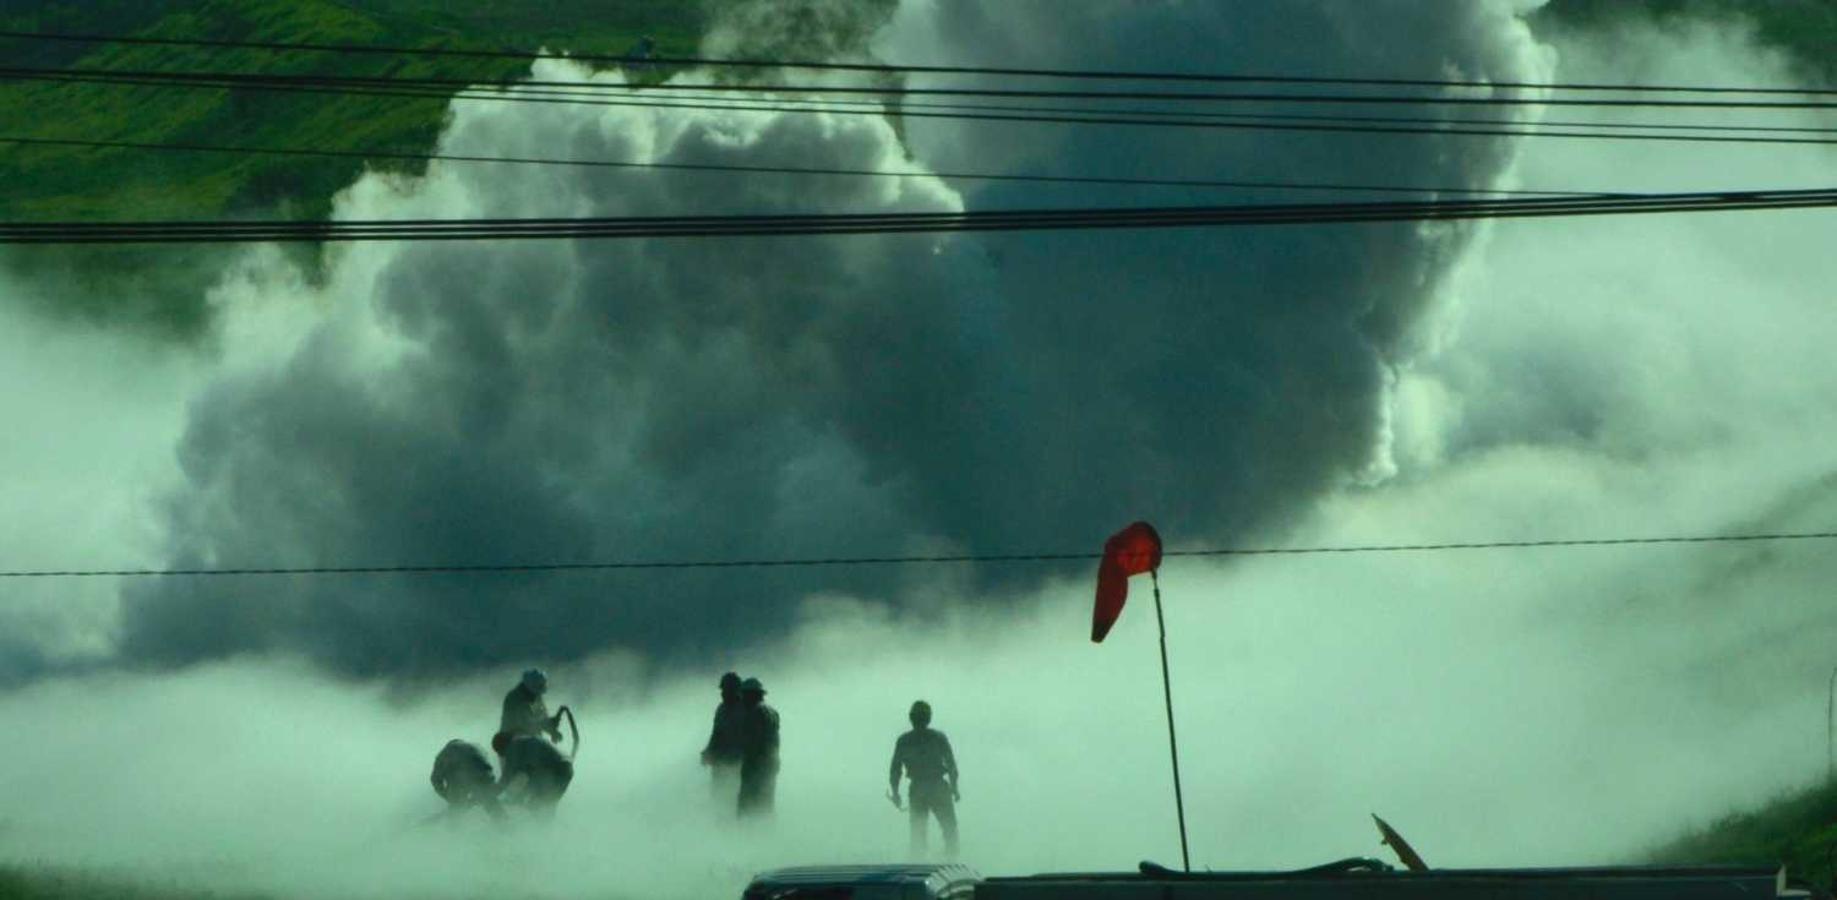 Efectivos de bomberos y Protección Civil trabajan para contener una fuga de gas en la ciudad de Nextlalpan, México 